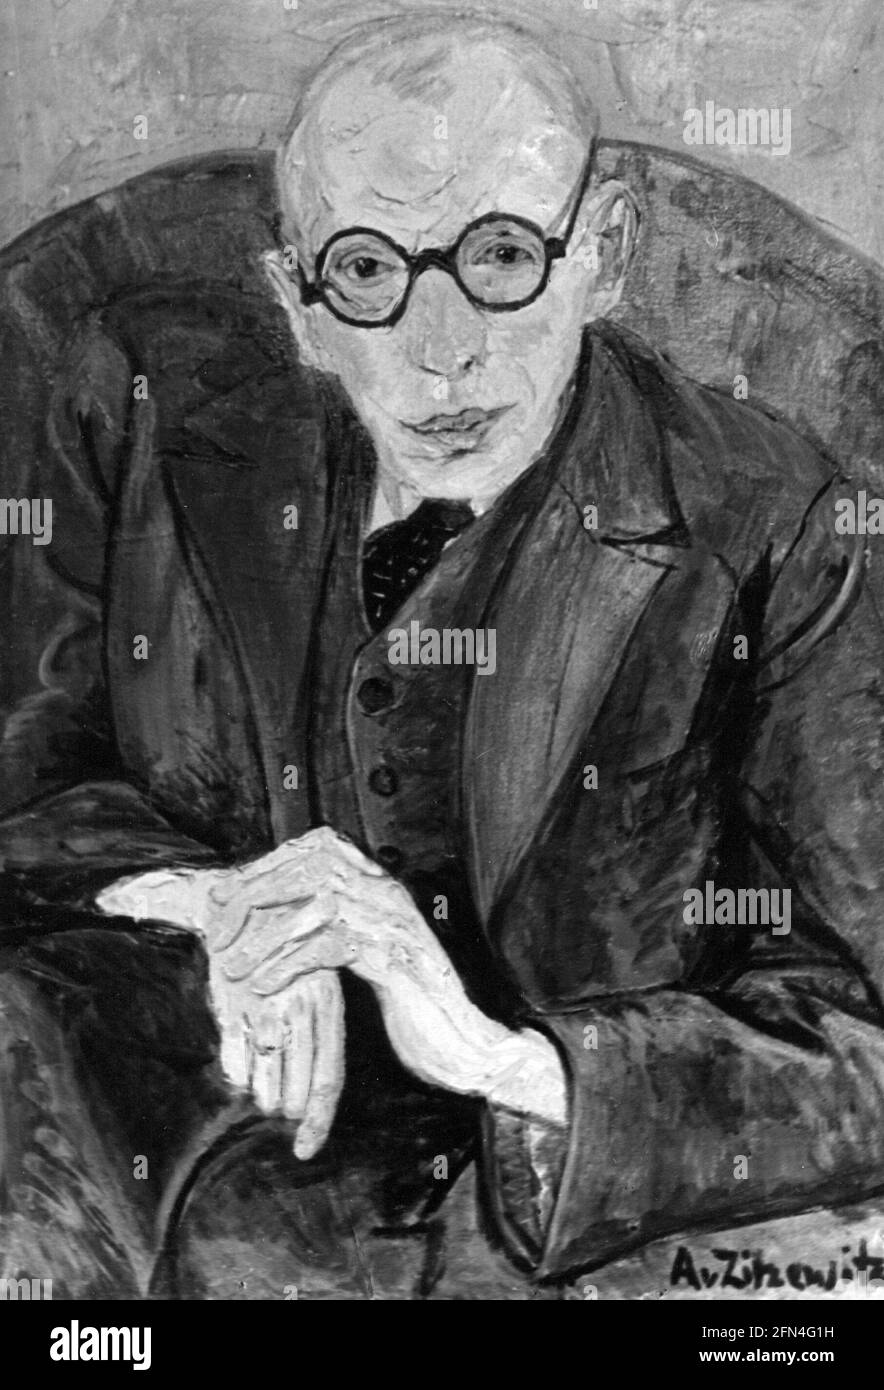 Herrmann-Neisse, Max, 23.5.1886 - 8.4.1941, auteur allemand, demi-longueur avec lunettes, DROITS-SUPPLÉMENTAIRES-AUTORISATION-INFO-NON-DISPONIBLE Banque D'Images